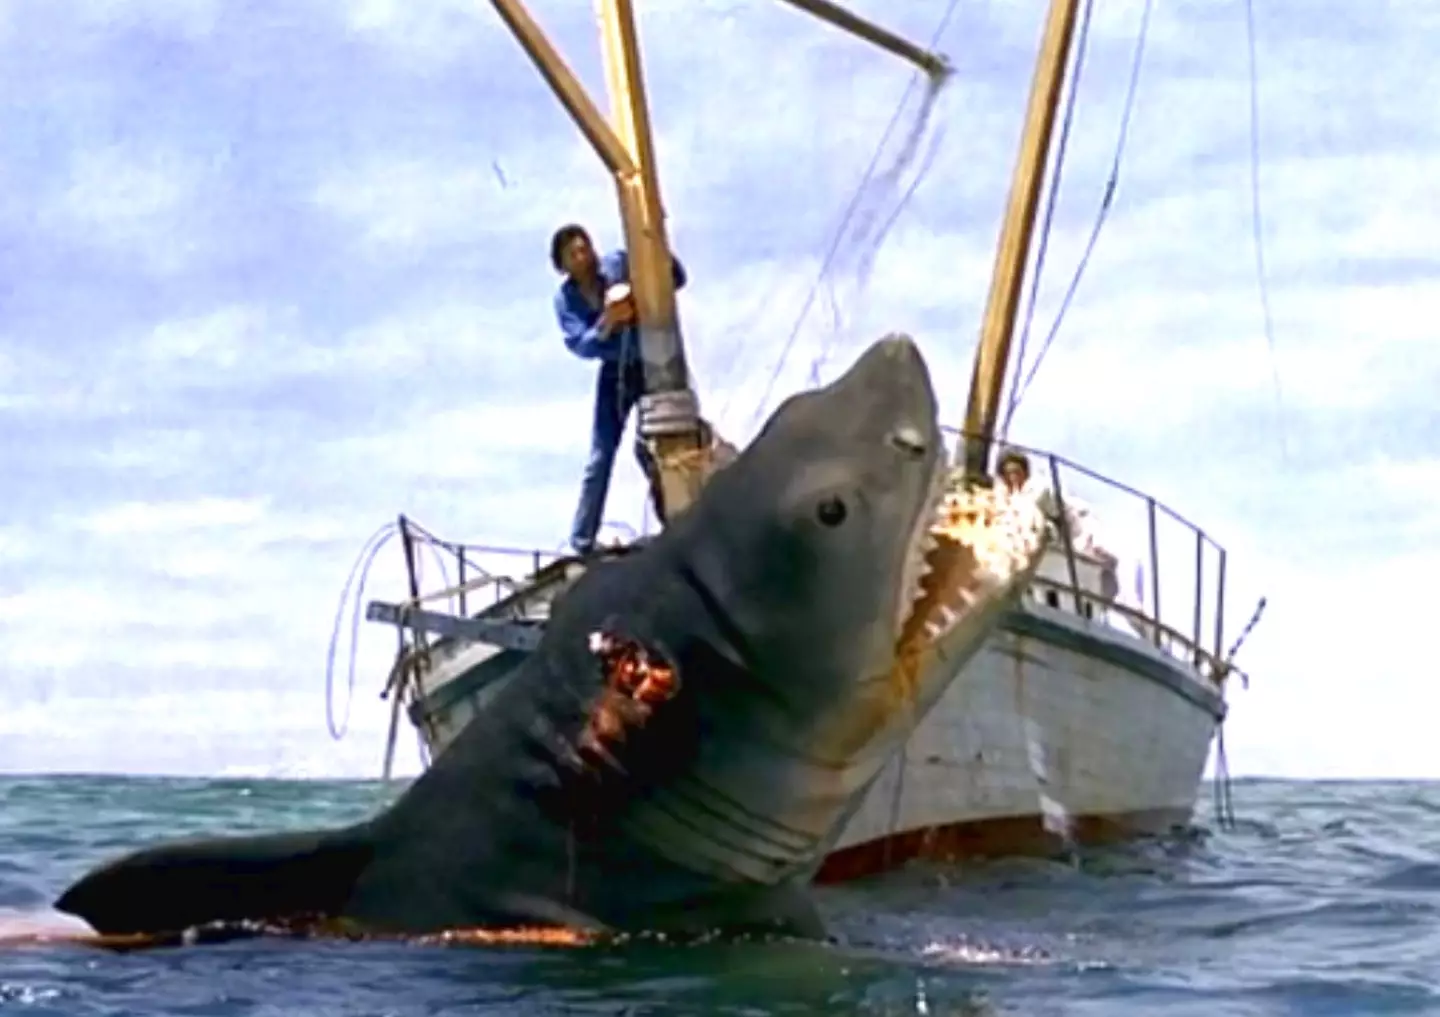 Jaws: The Revenge.